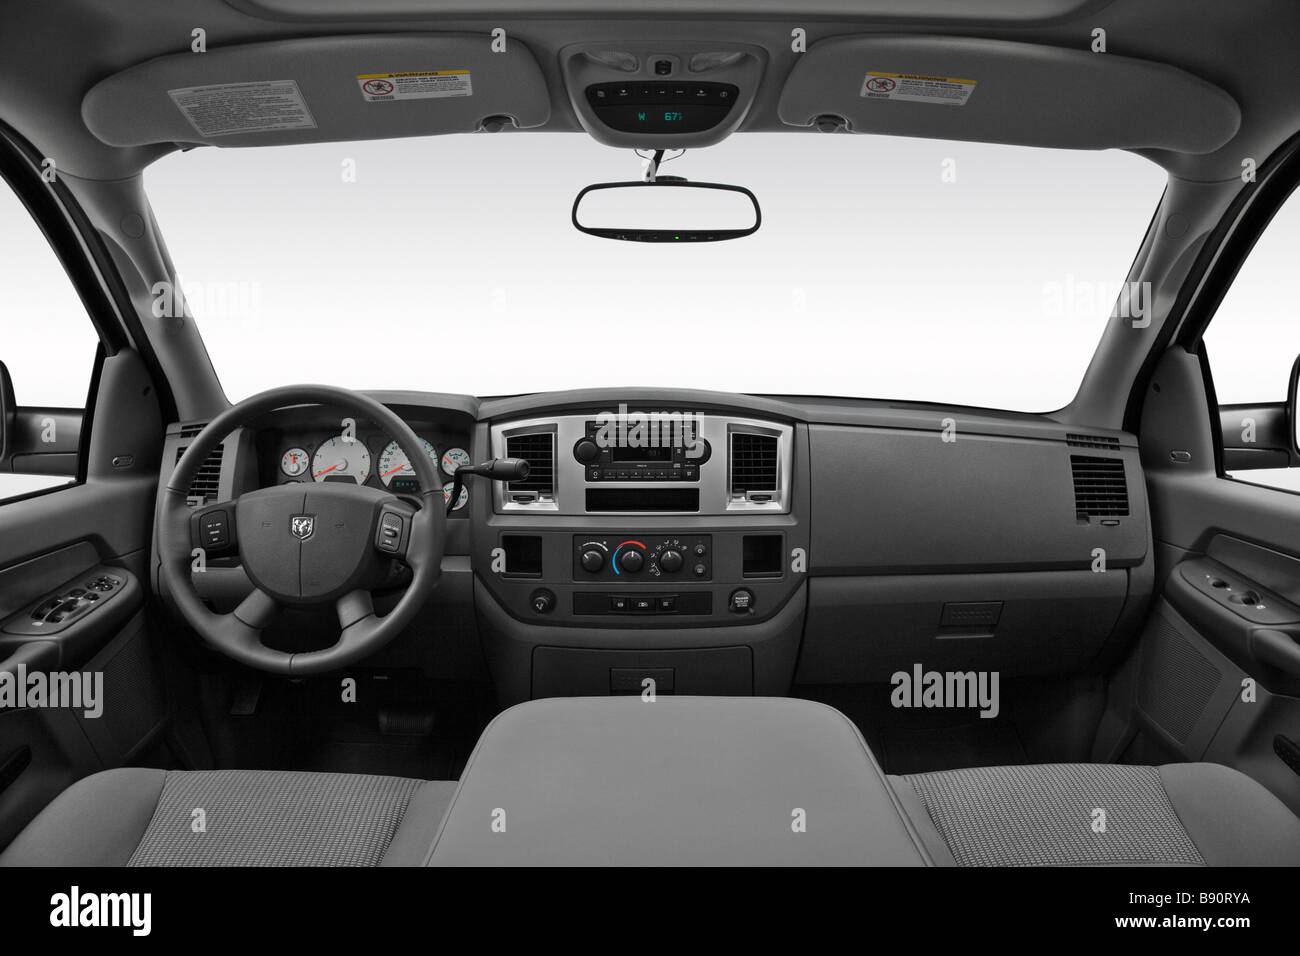 Dodge Ram 2500 Big Horn Ausgabe 2009 in weiß - Armaturenbrett, Mittelkonsole, Getriebe Schalthebel Ansicht Stockfoto